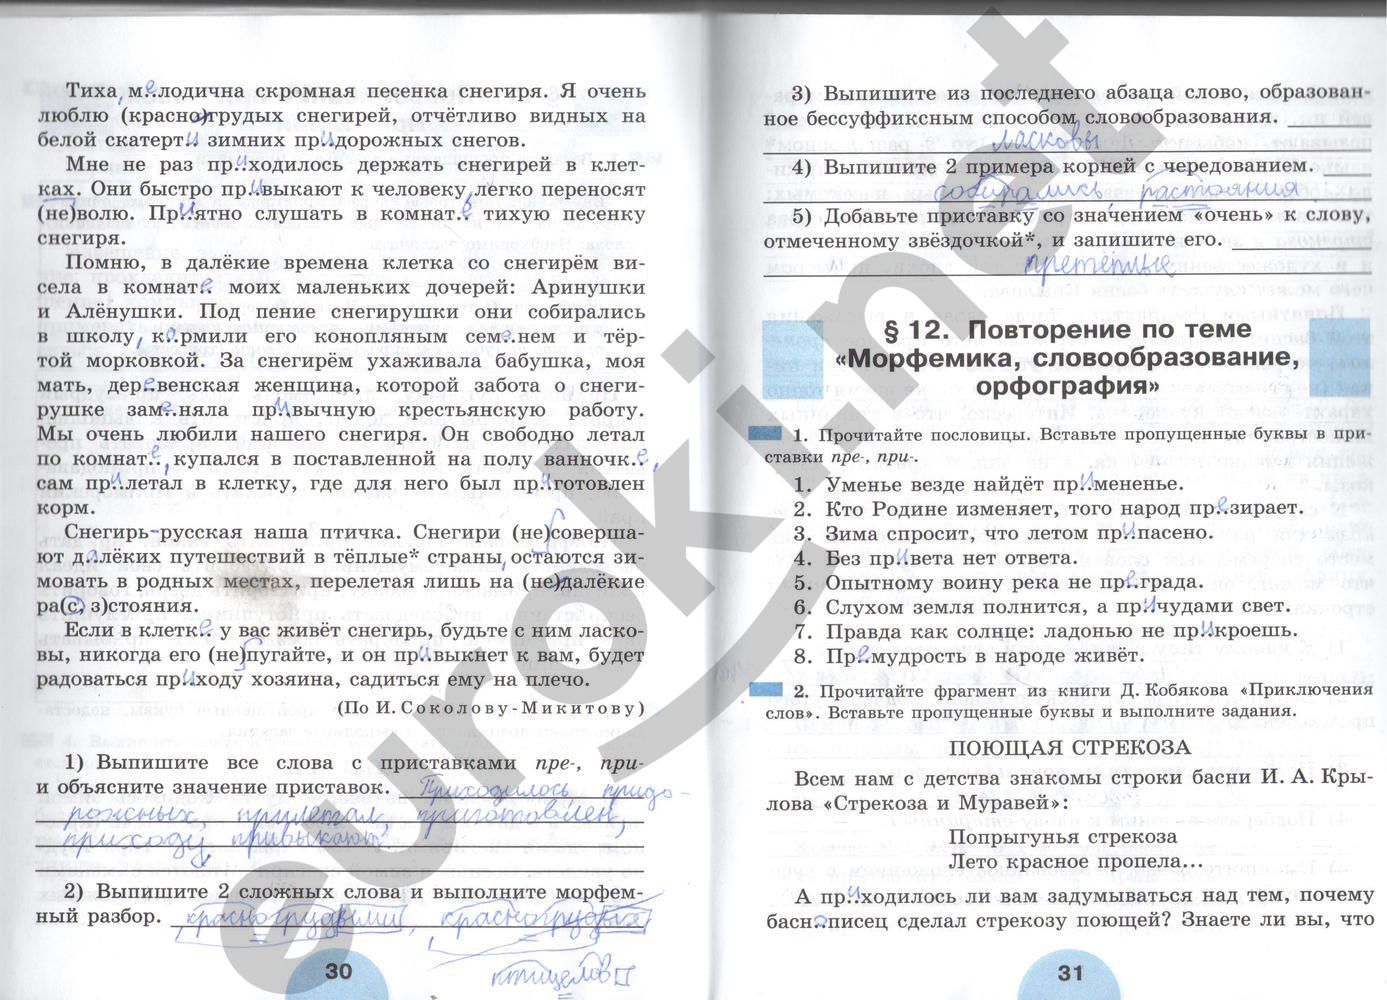 ГДЗ Русский язык 6 класс - стр. 30-31